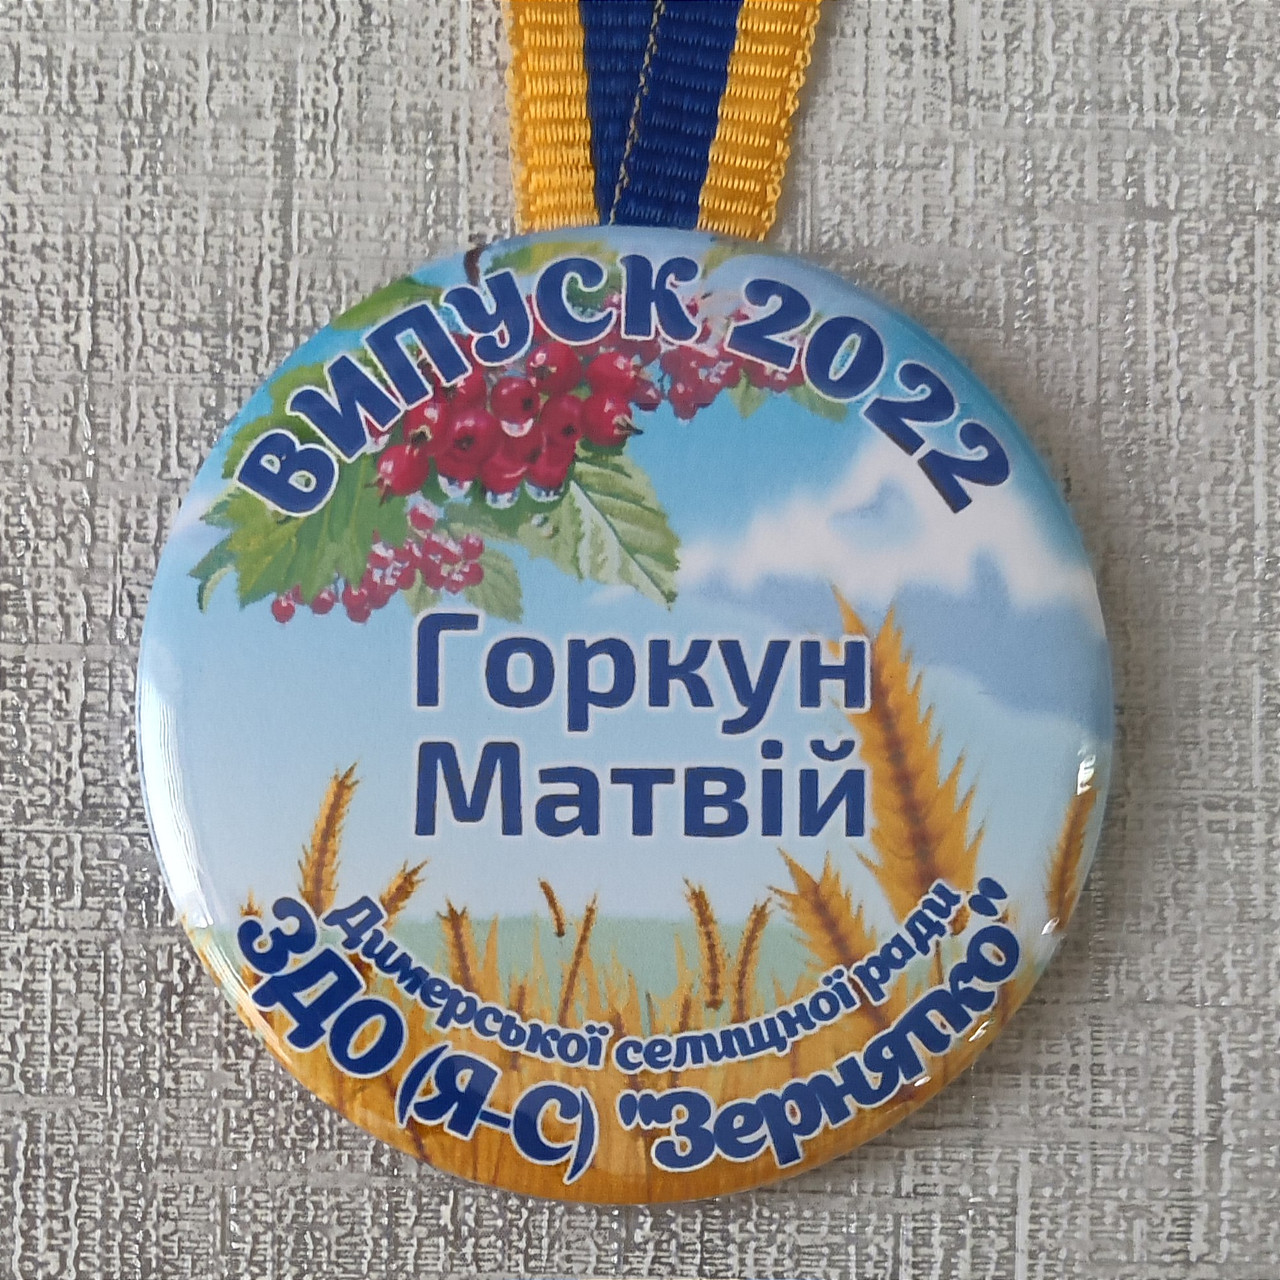 Іменні медалі для випускників дитячого садка "Колосок" група Калинка, фото 1